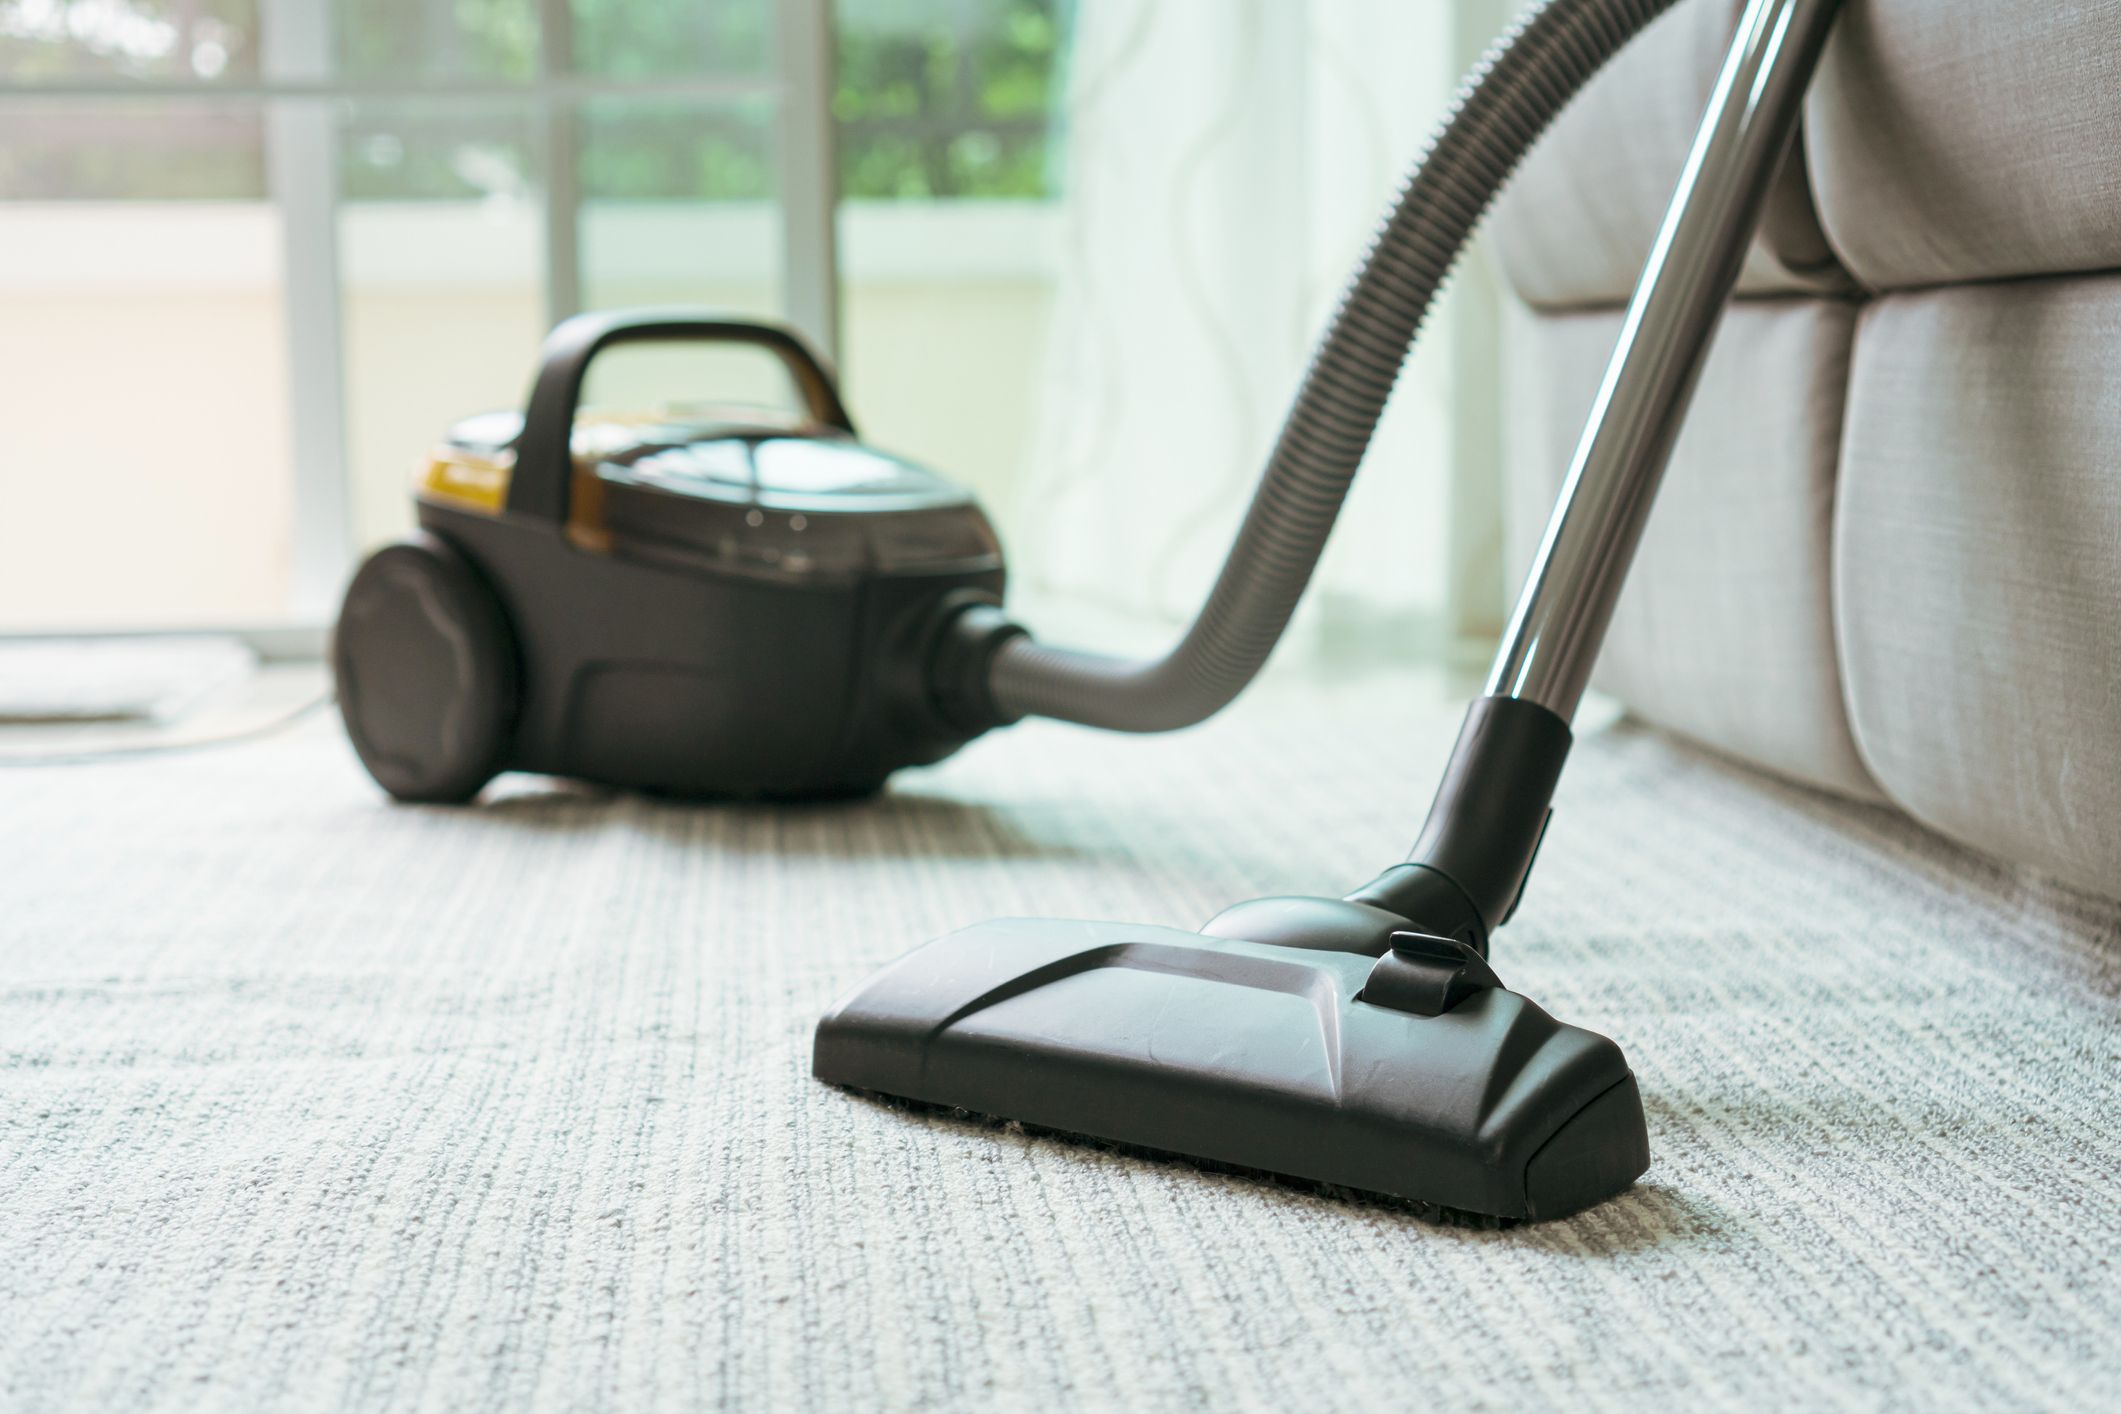 8 Best Hepa Vacuum Cleaners Reviews 2021, Best Compact Vacuum For Hardwood Floors